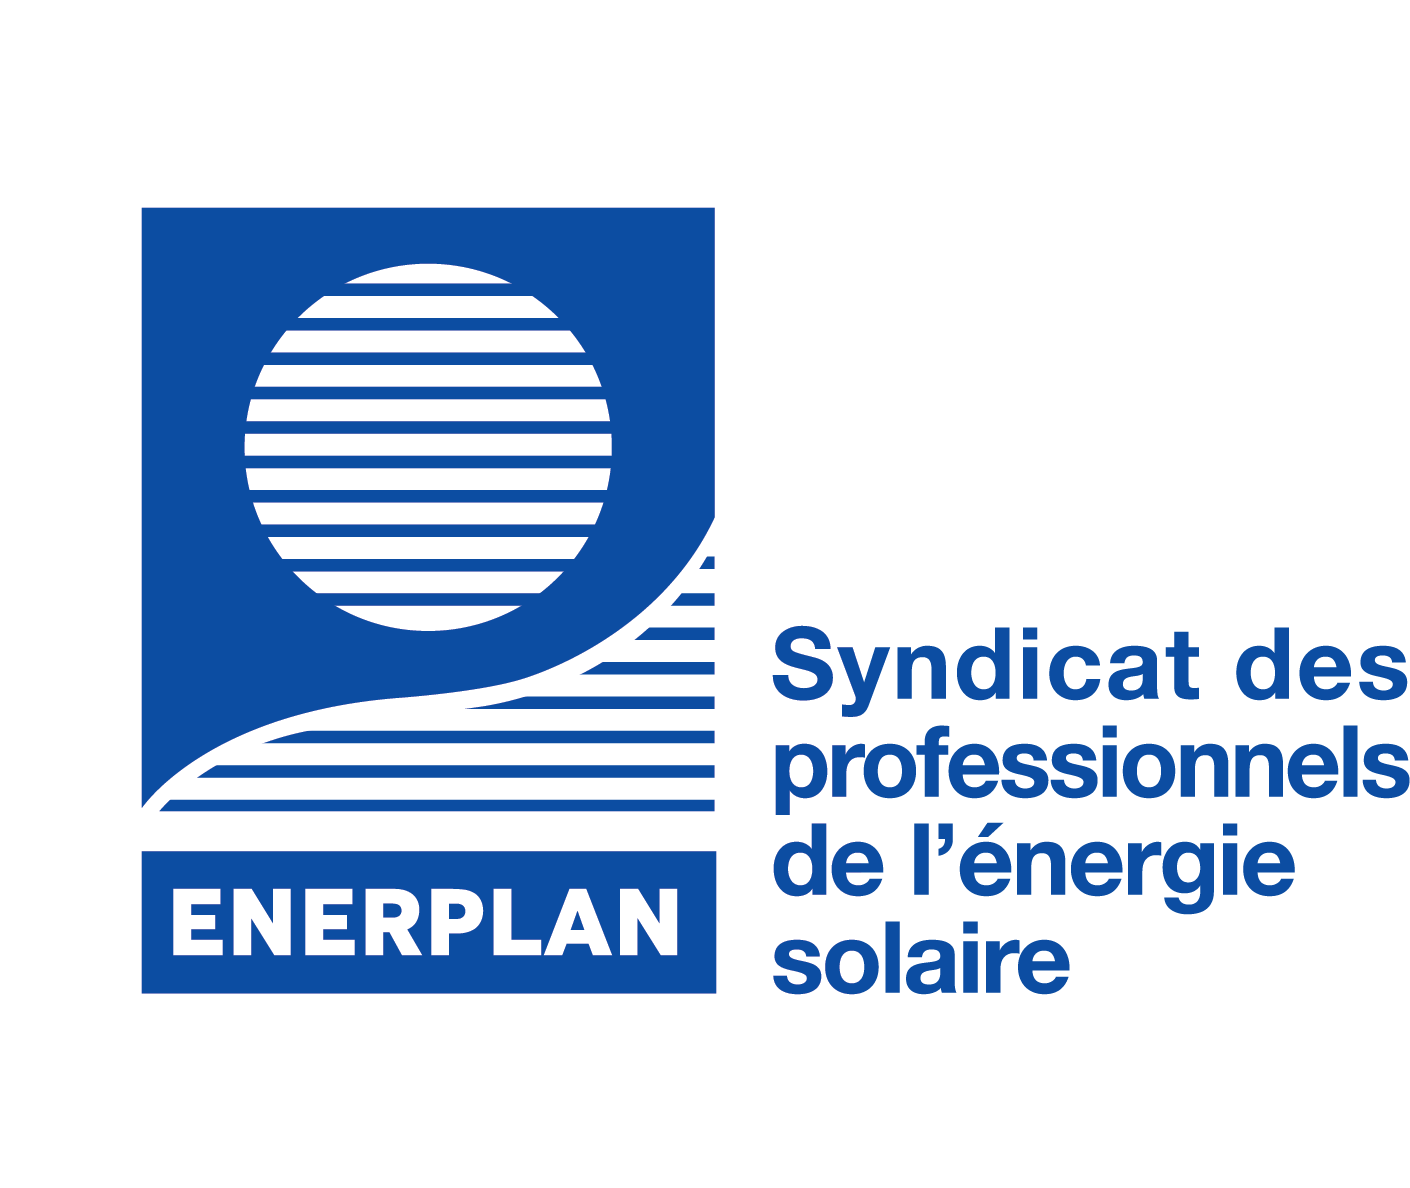 ENERPLAN – Syndicat des professionnels de l’énergie solaire